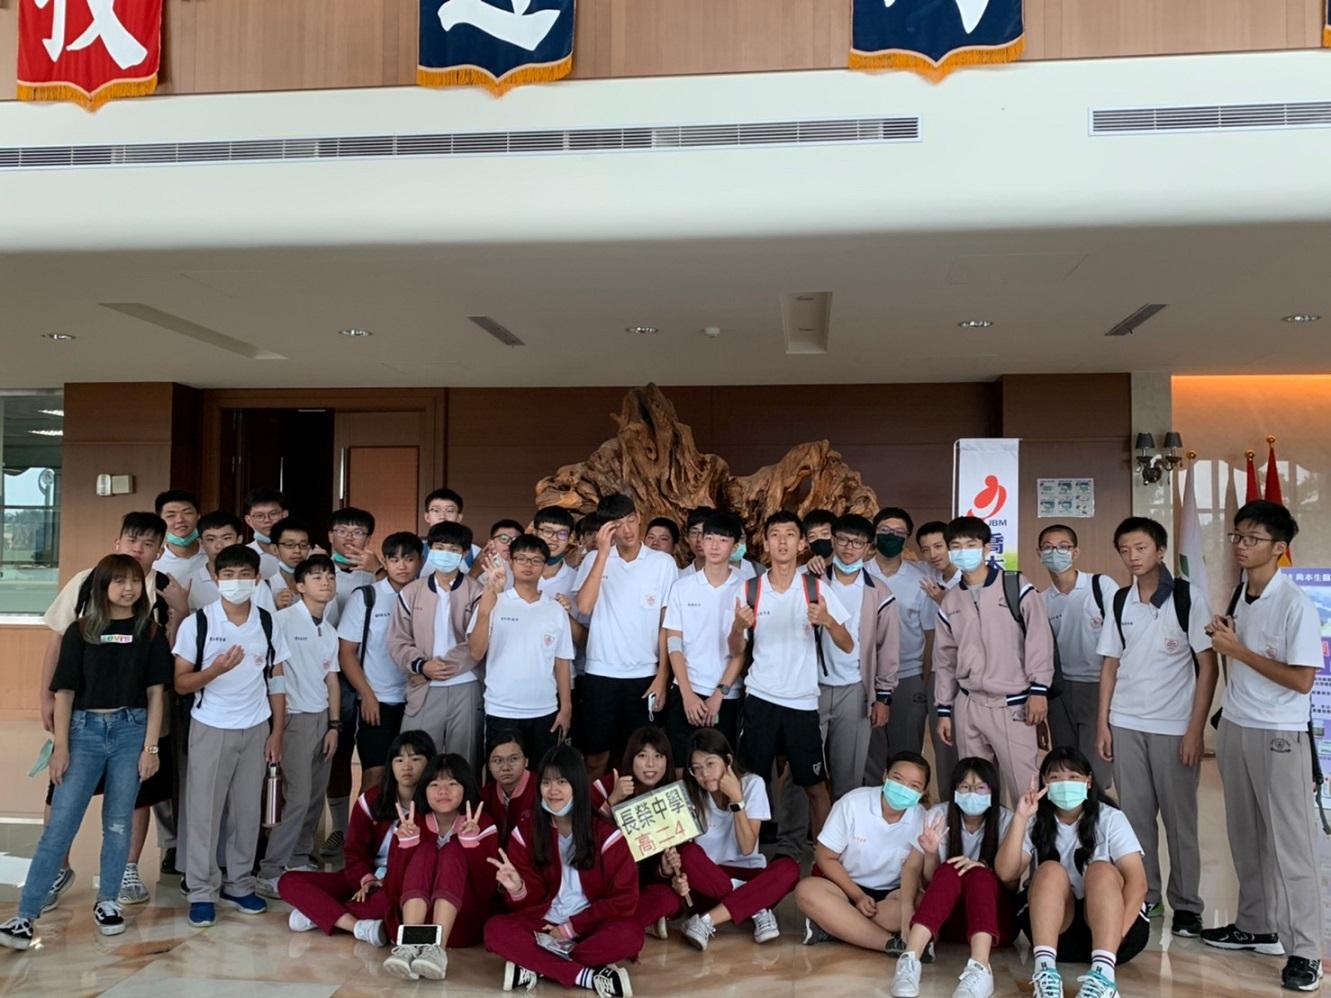 歡迎台南長榮高級中學師生蒞臨